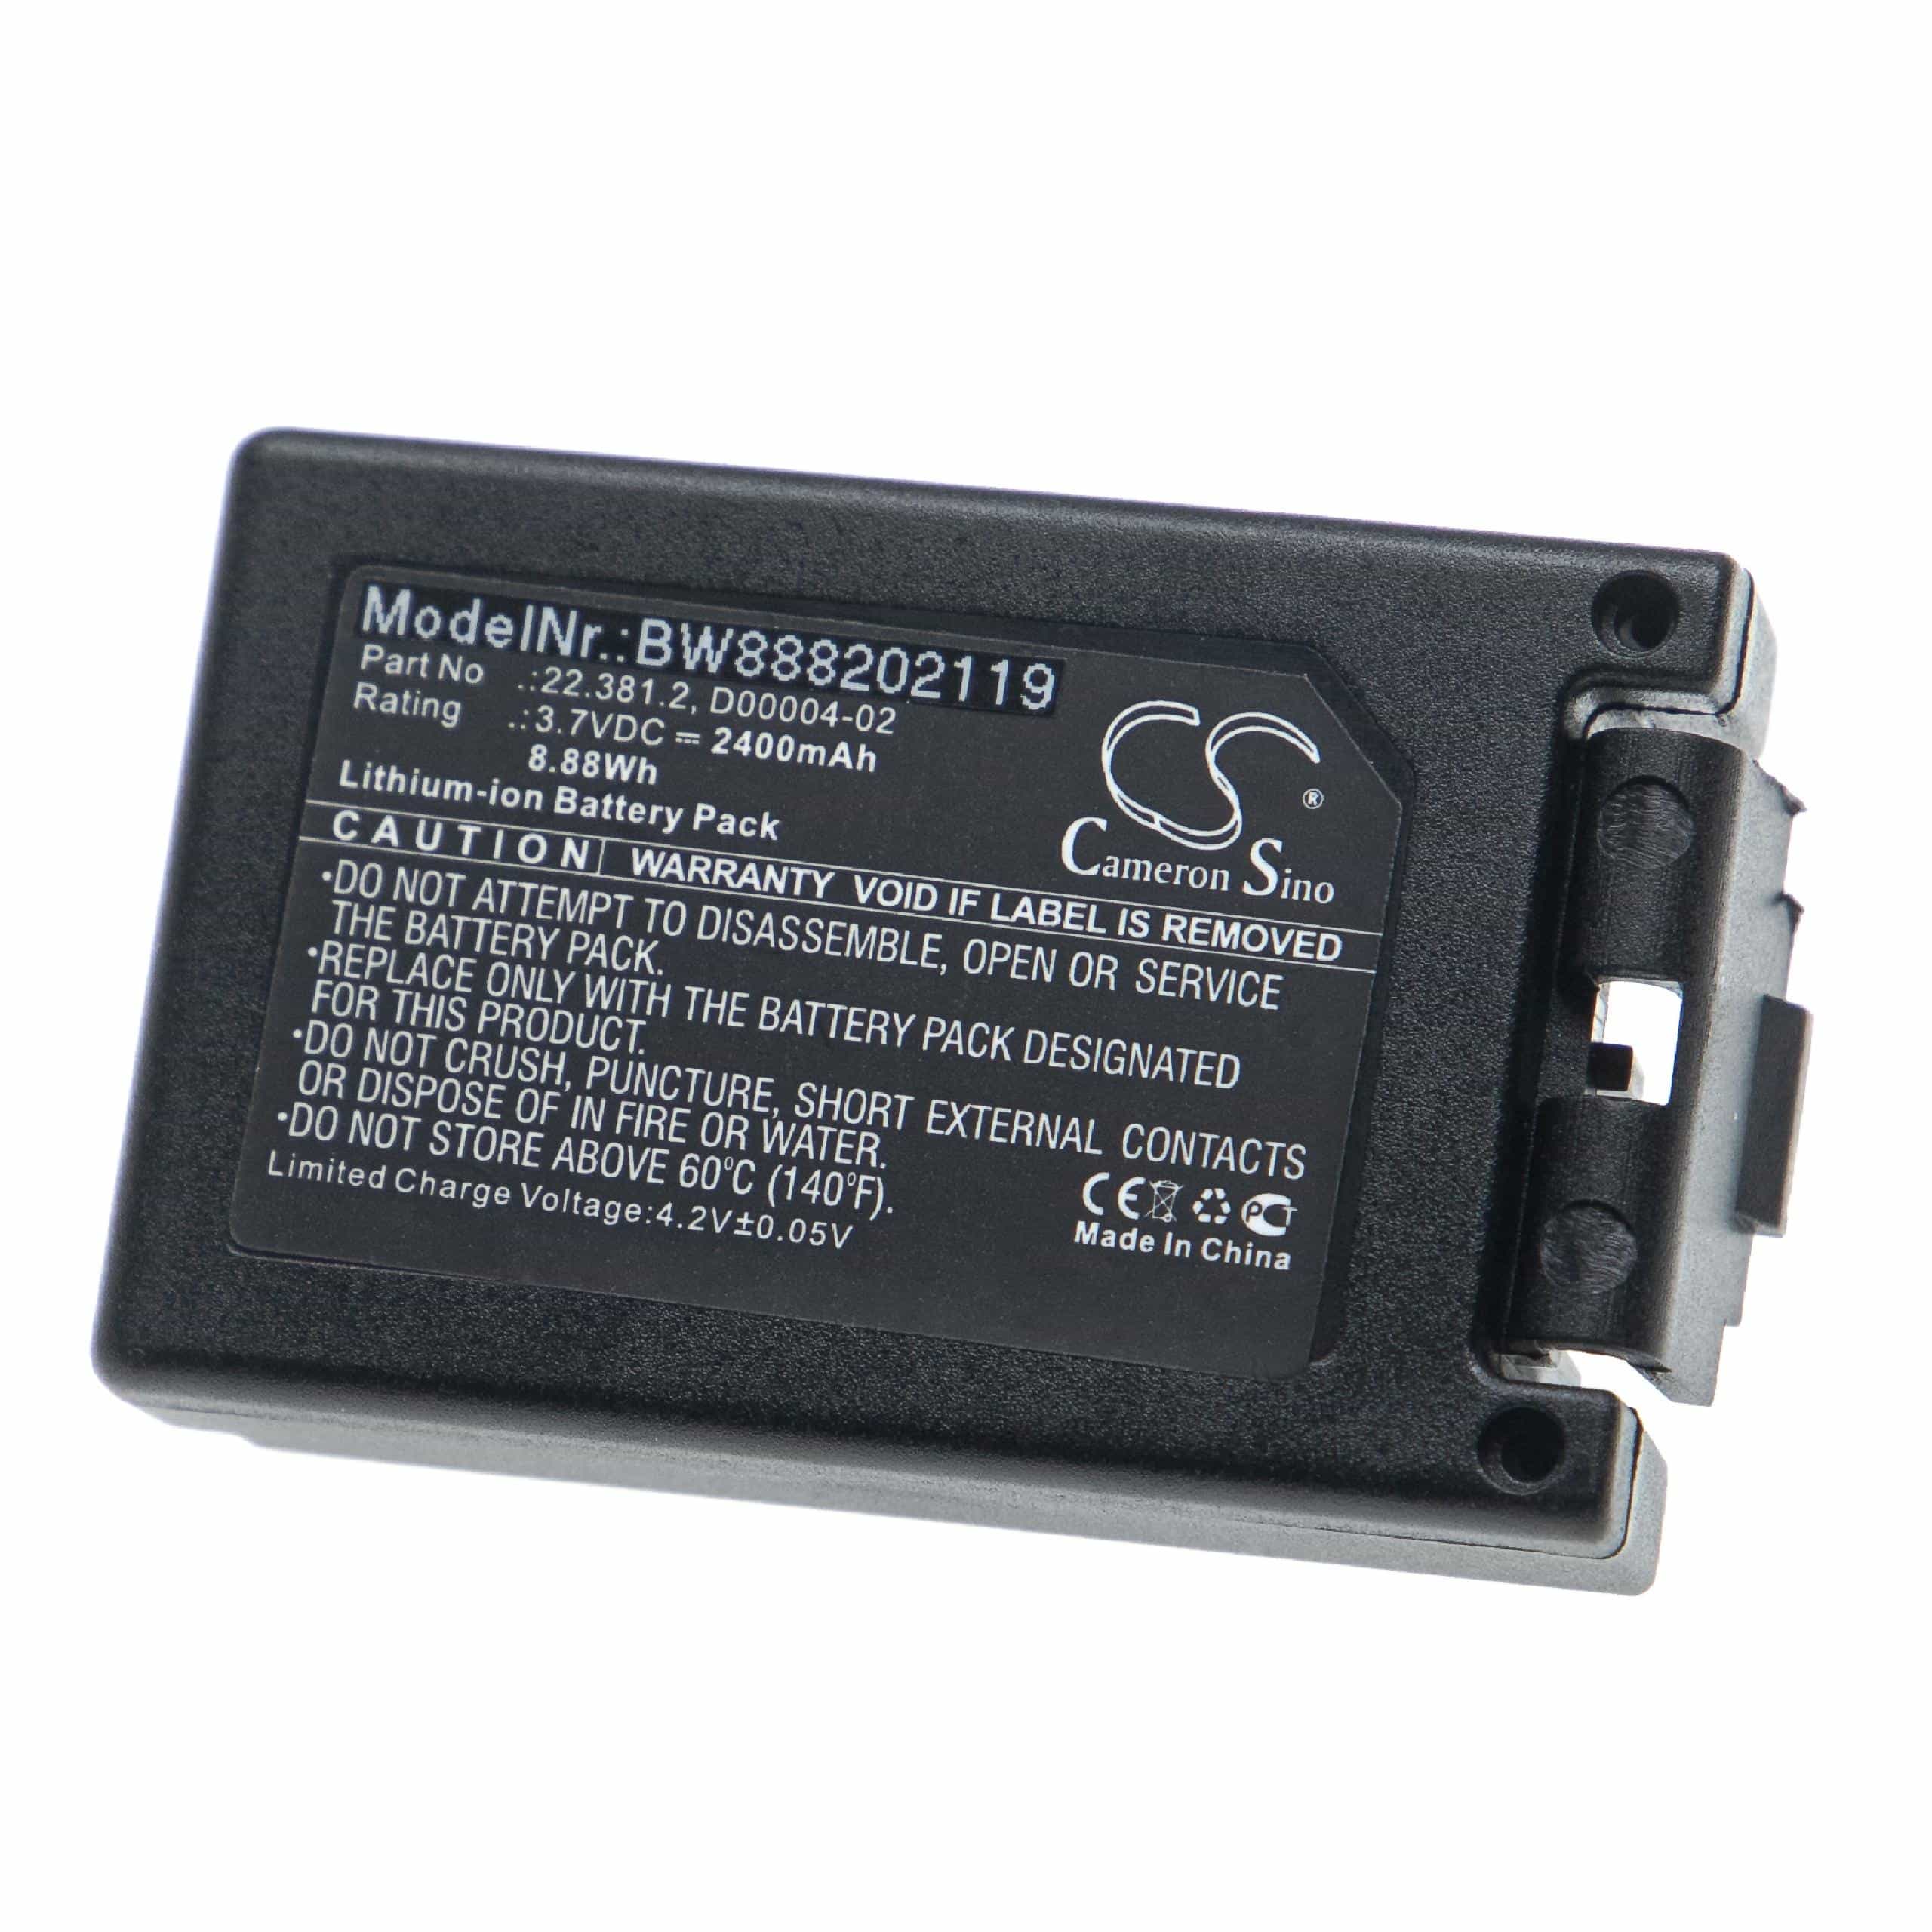 Batterie remplace Teleradio M245060, 22.381.2, D00004-02 pour télécomande industrielle - 2400mAh 3,7V Li-ion